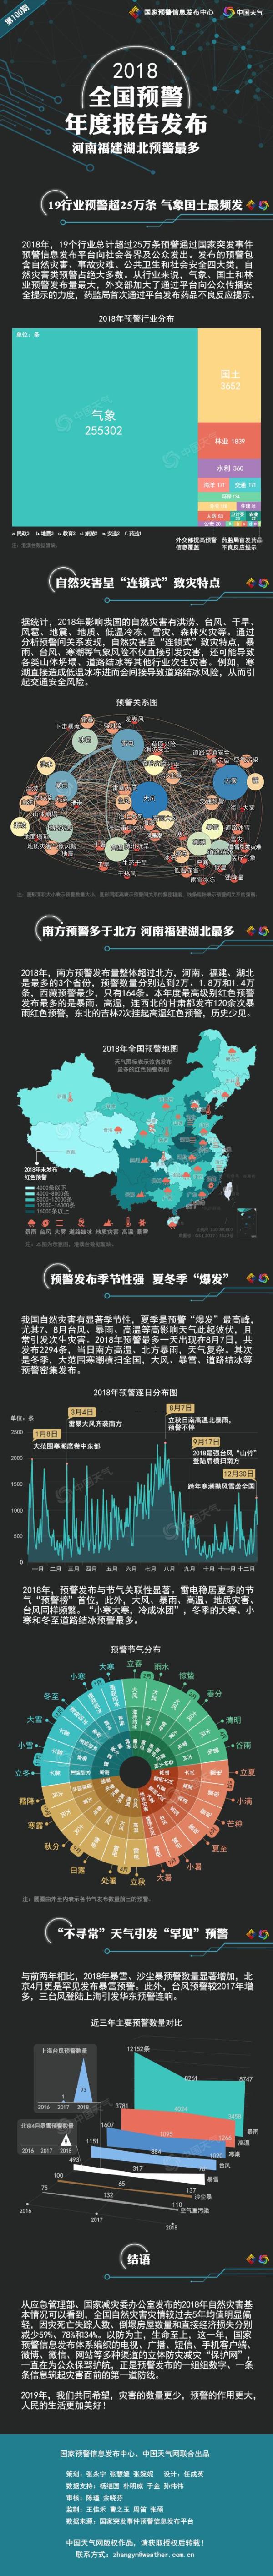 2018全国预警年度报告发布  河南福建湖北预警最多